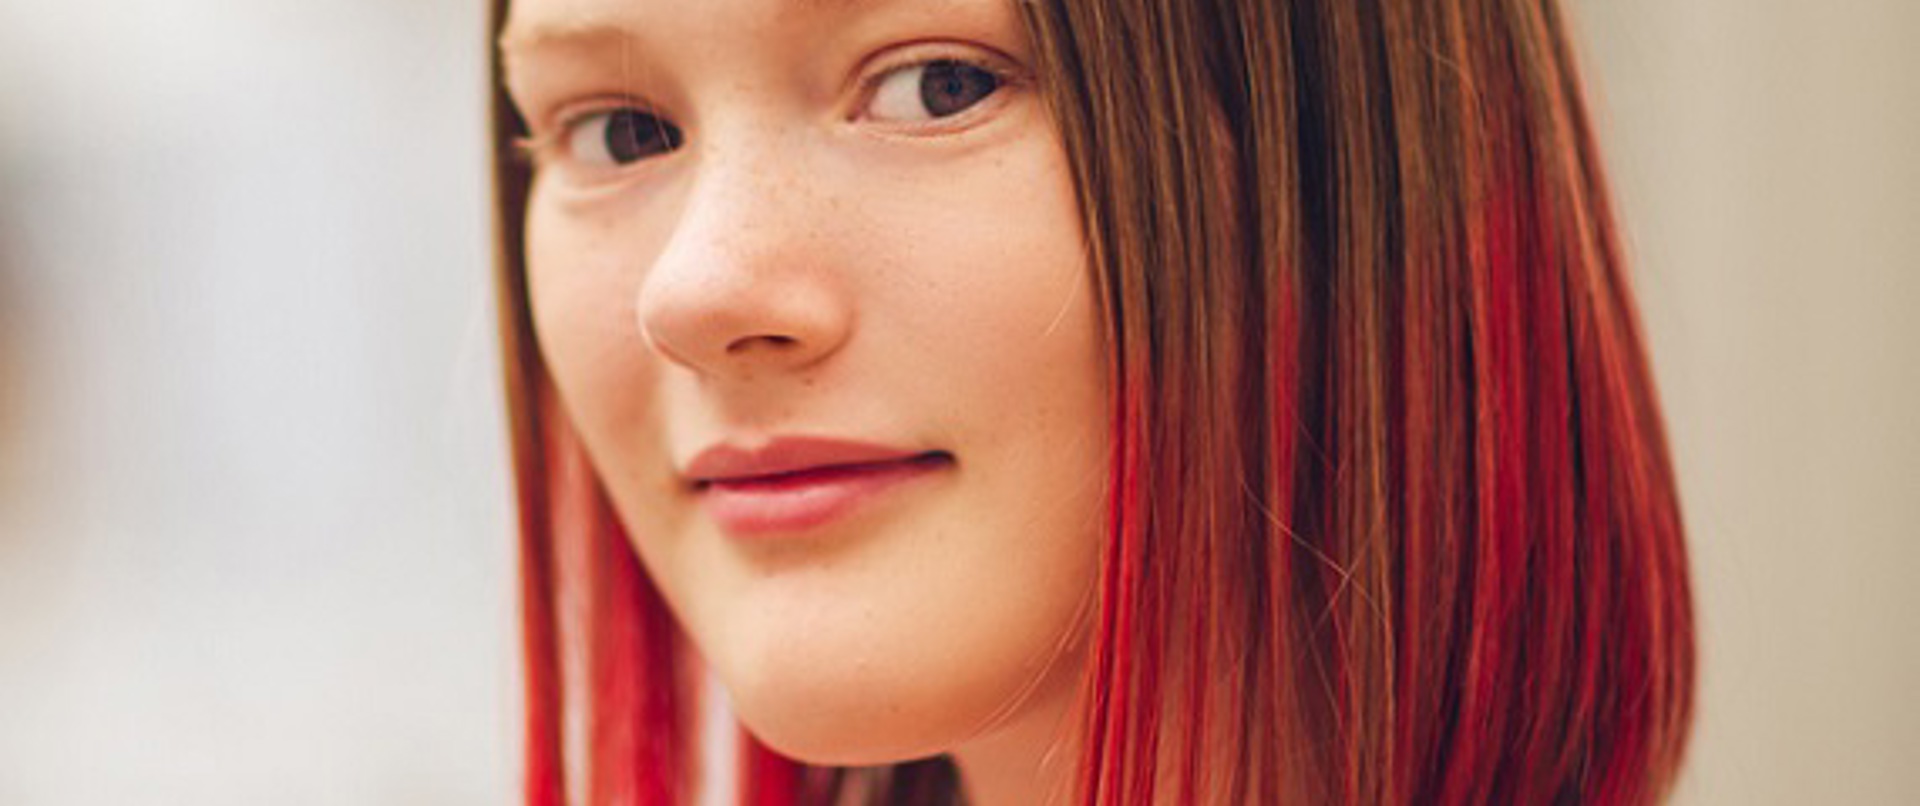 Kızıl ombre saç modelleri: Kızıl ombre nasıl yapılır?